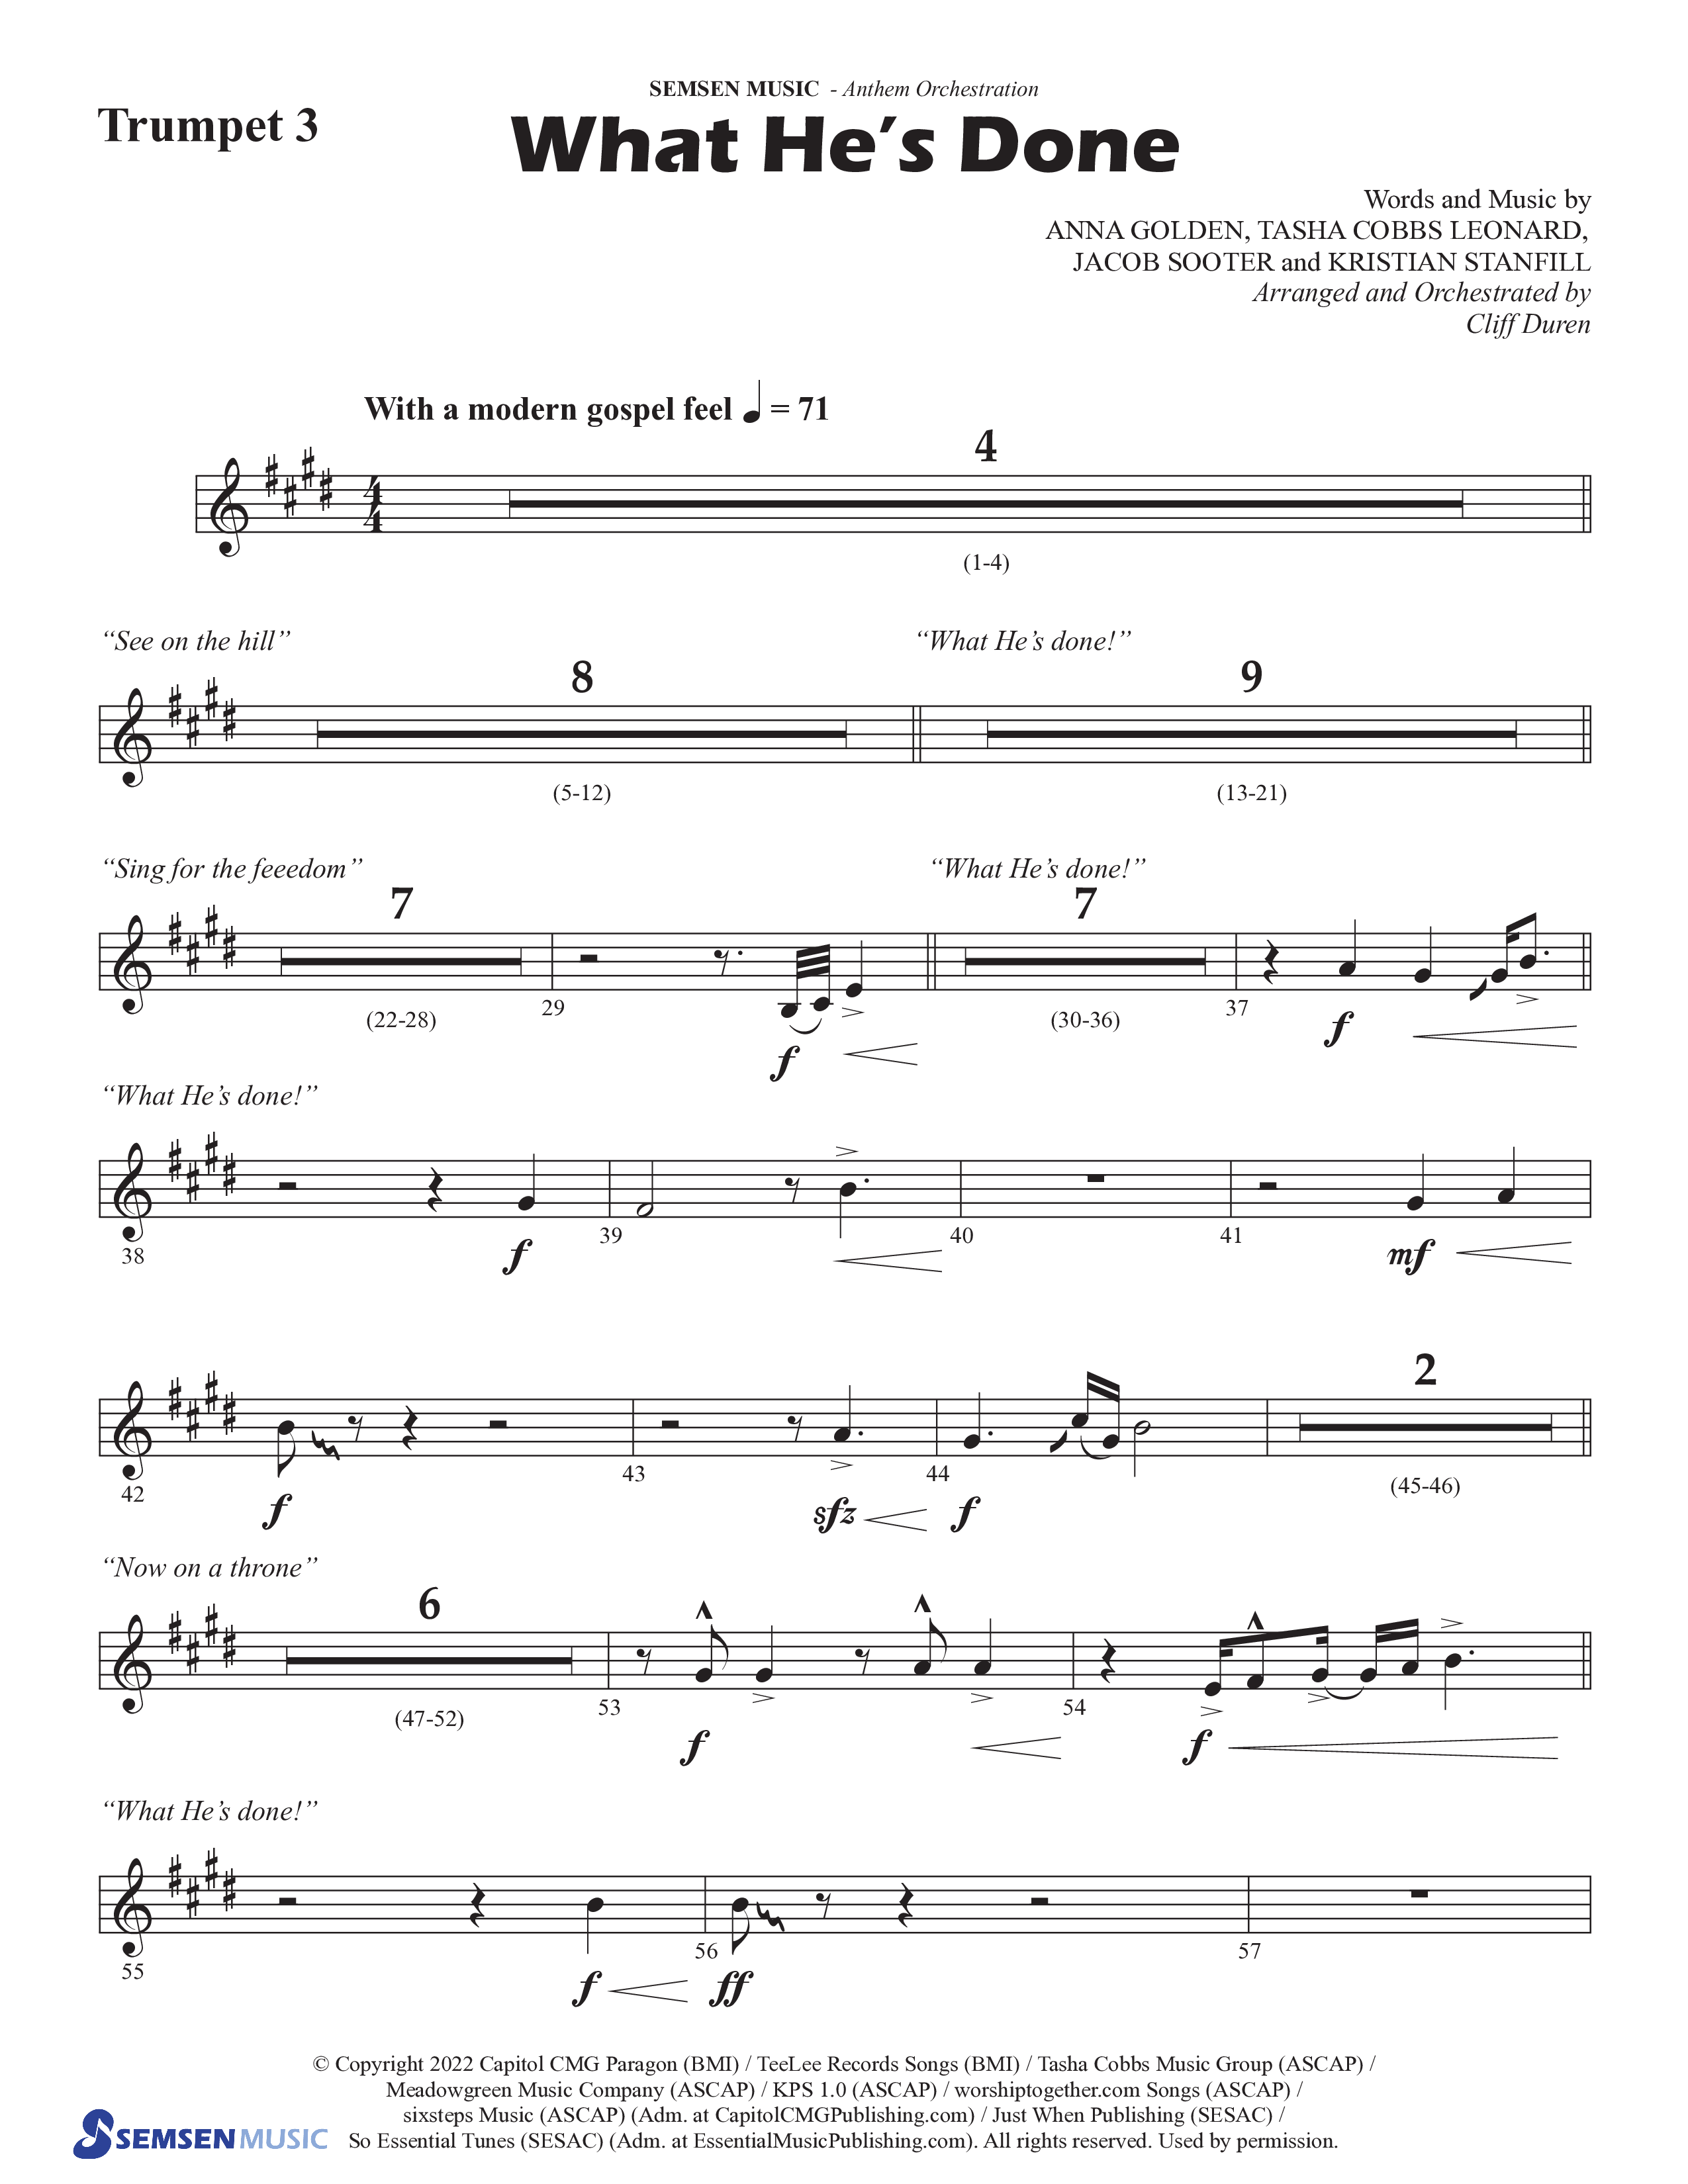 What He's Done (Choral Anthem SATB) Trumpet 3 (Semsen Music / Arr. Cliff Duren)